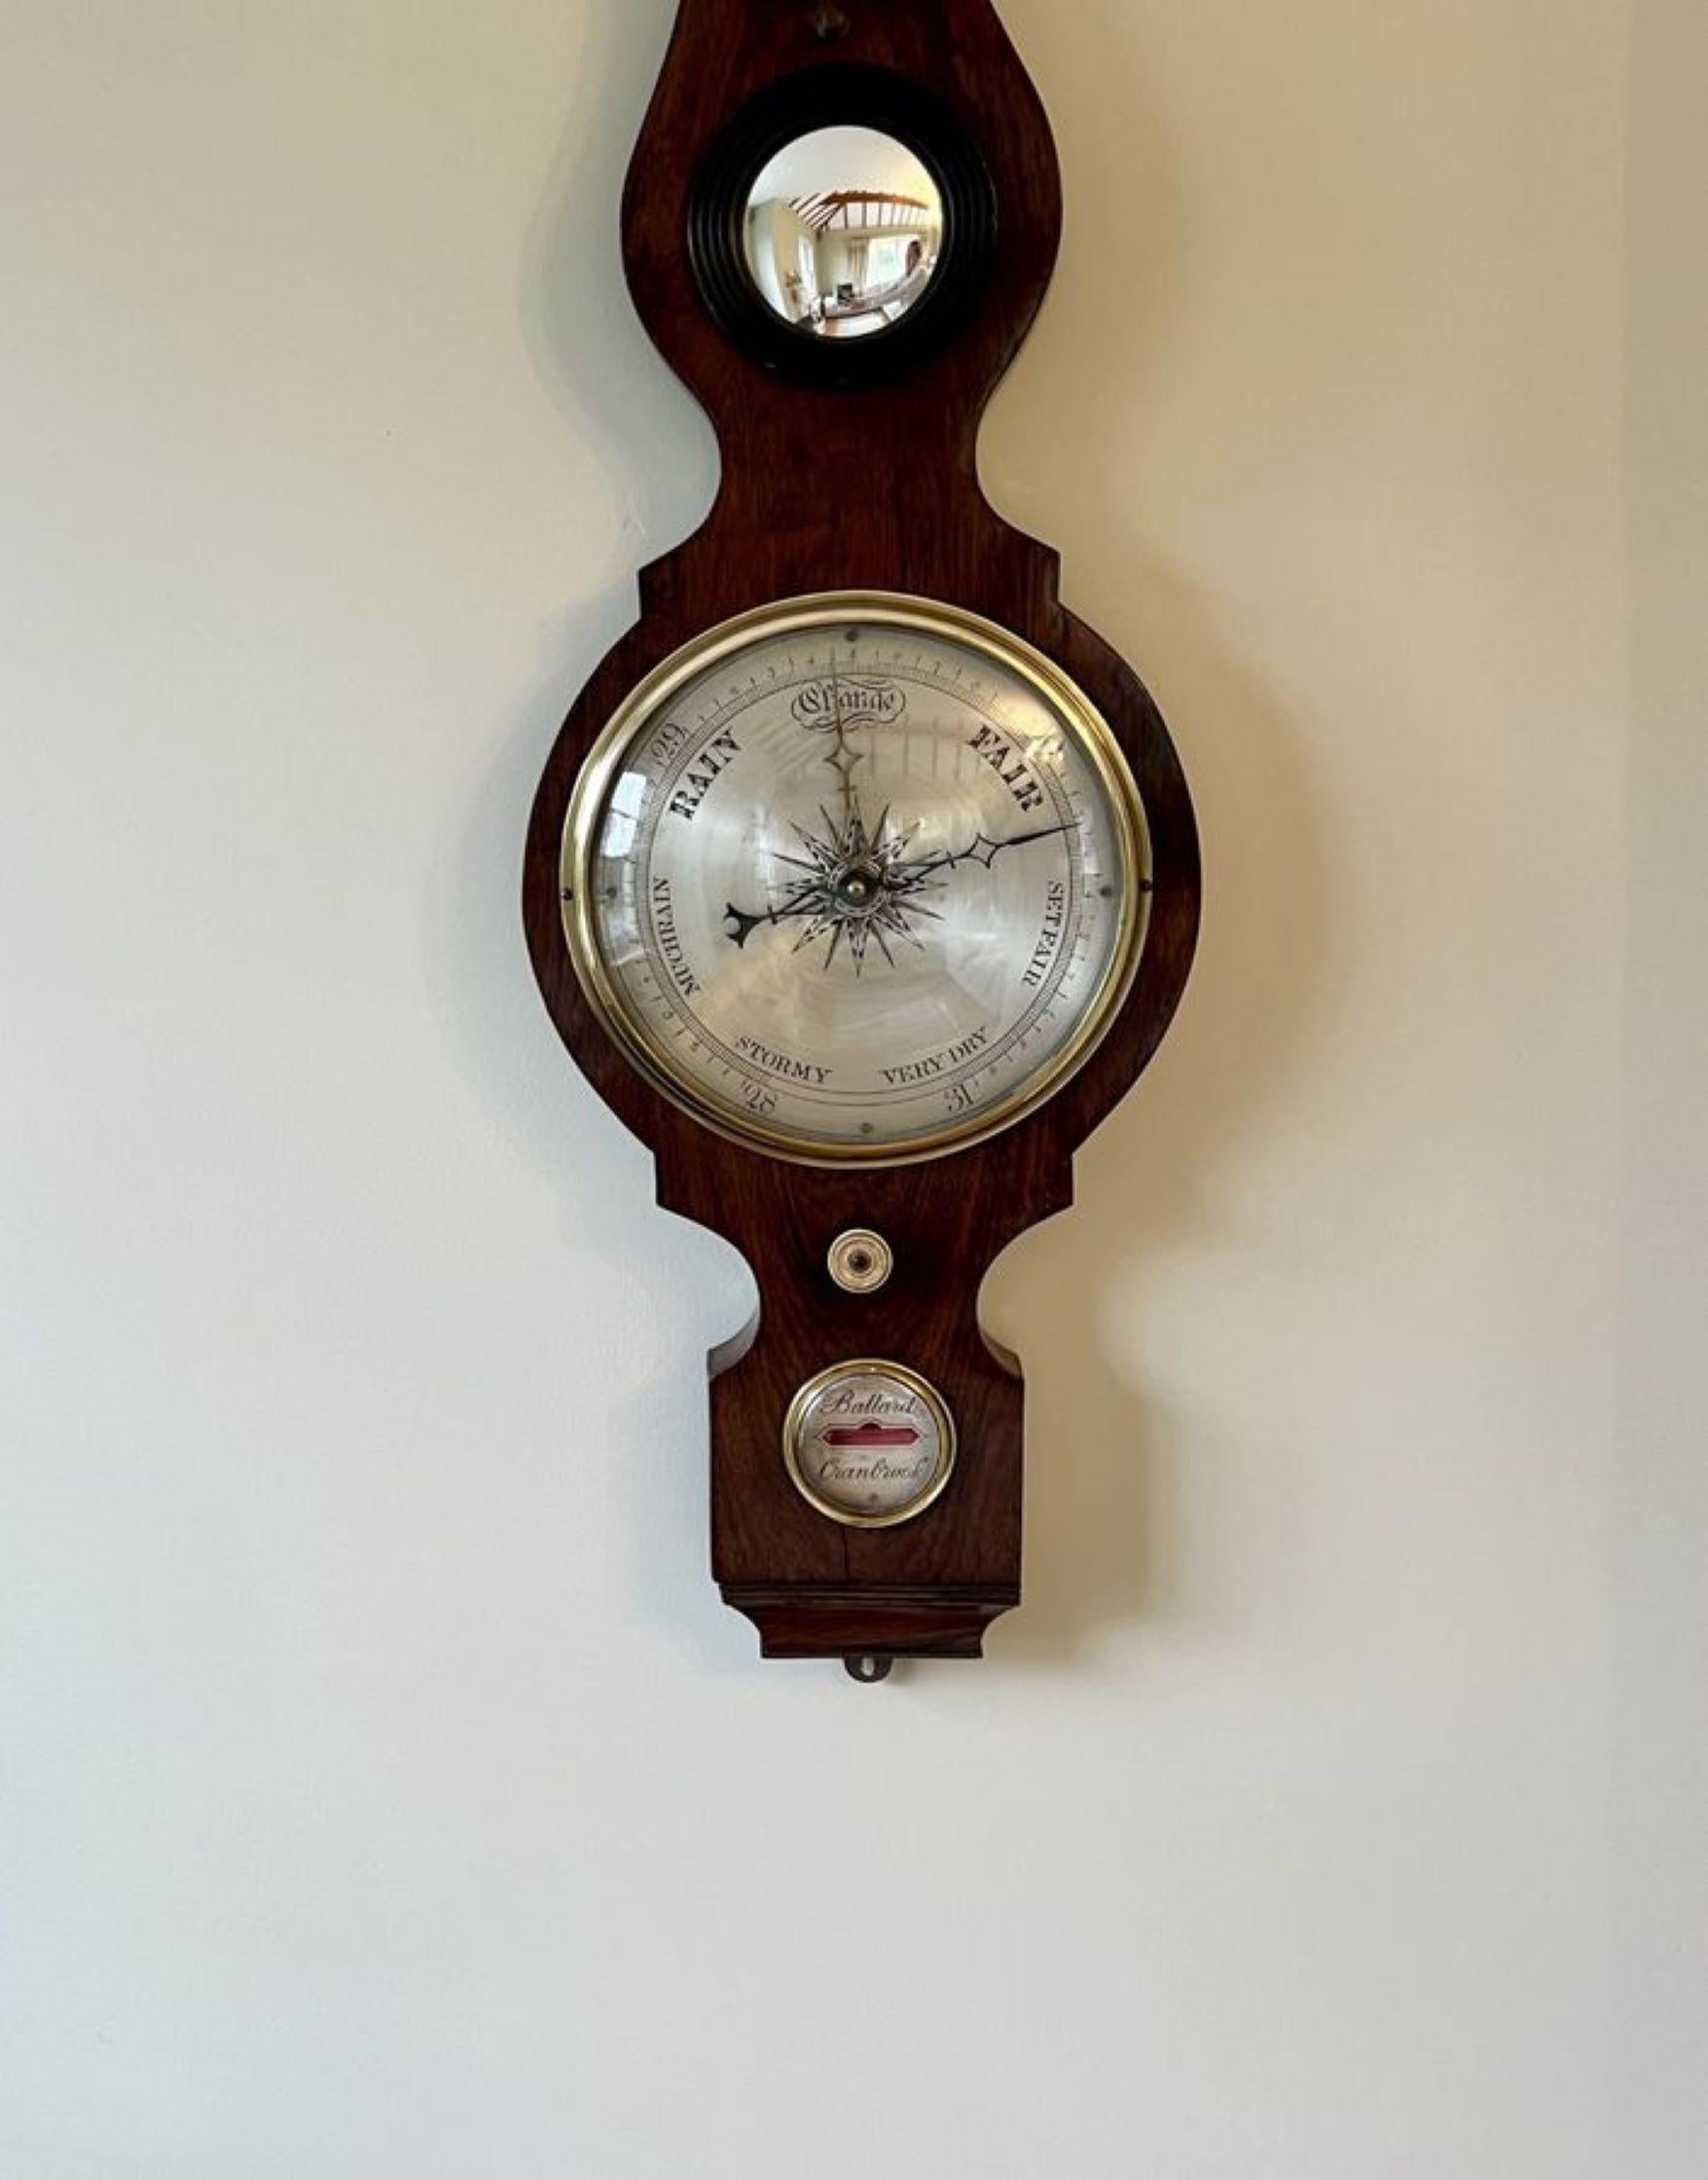 Qualität antiken viktorianischen Palisander Banjo Barometer, mit einem geformten Rad Barometer von Ballard of Cranbrook, Thermometer Hygrometer Wasserwaage und eine kreisförmige versilbert graviert Zifferblatt mit einer Messing-Lünette. 

D. 1880